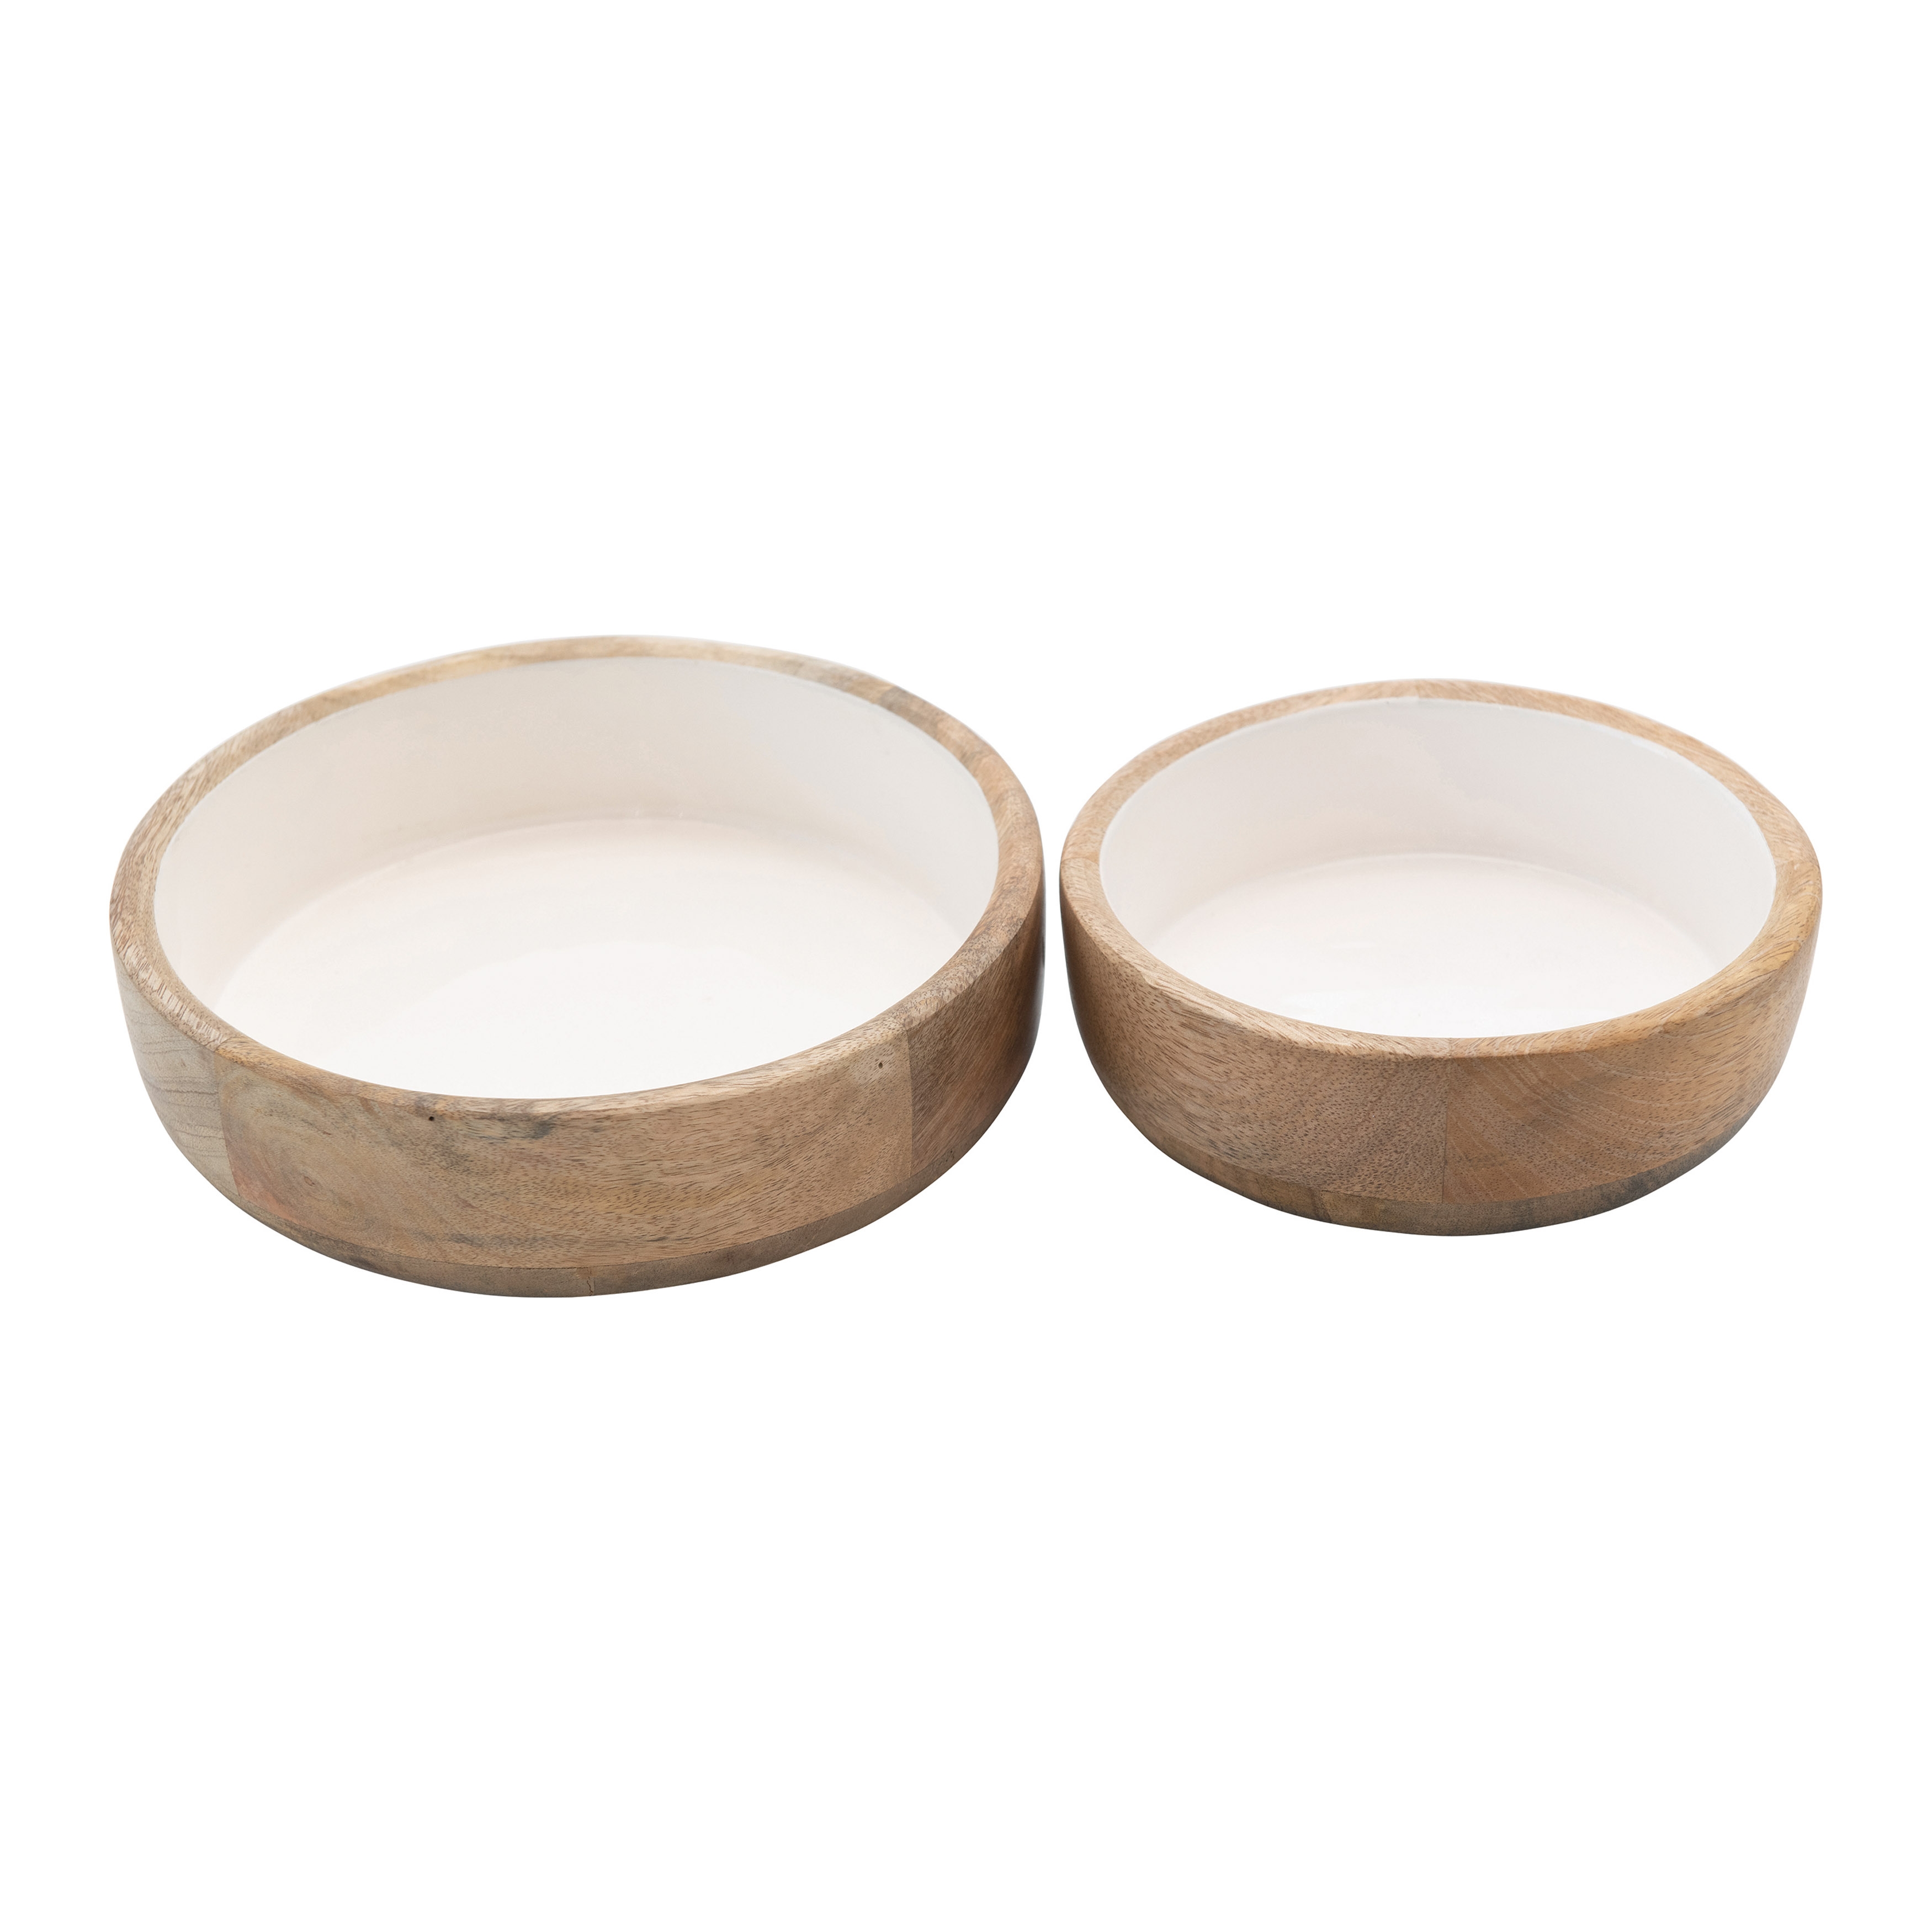 Mango Wood Bowls with White Enameled Interior, Set of 2 - Image 0